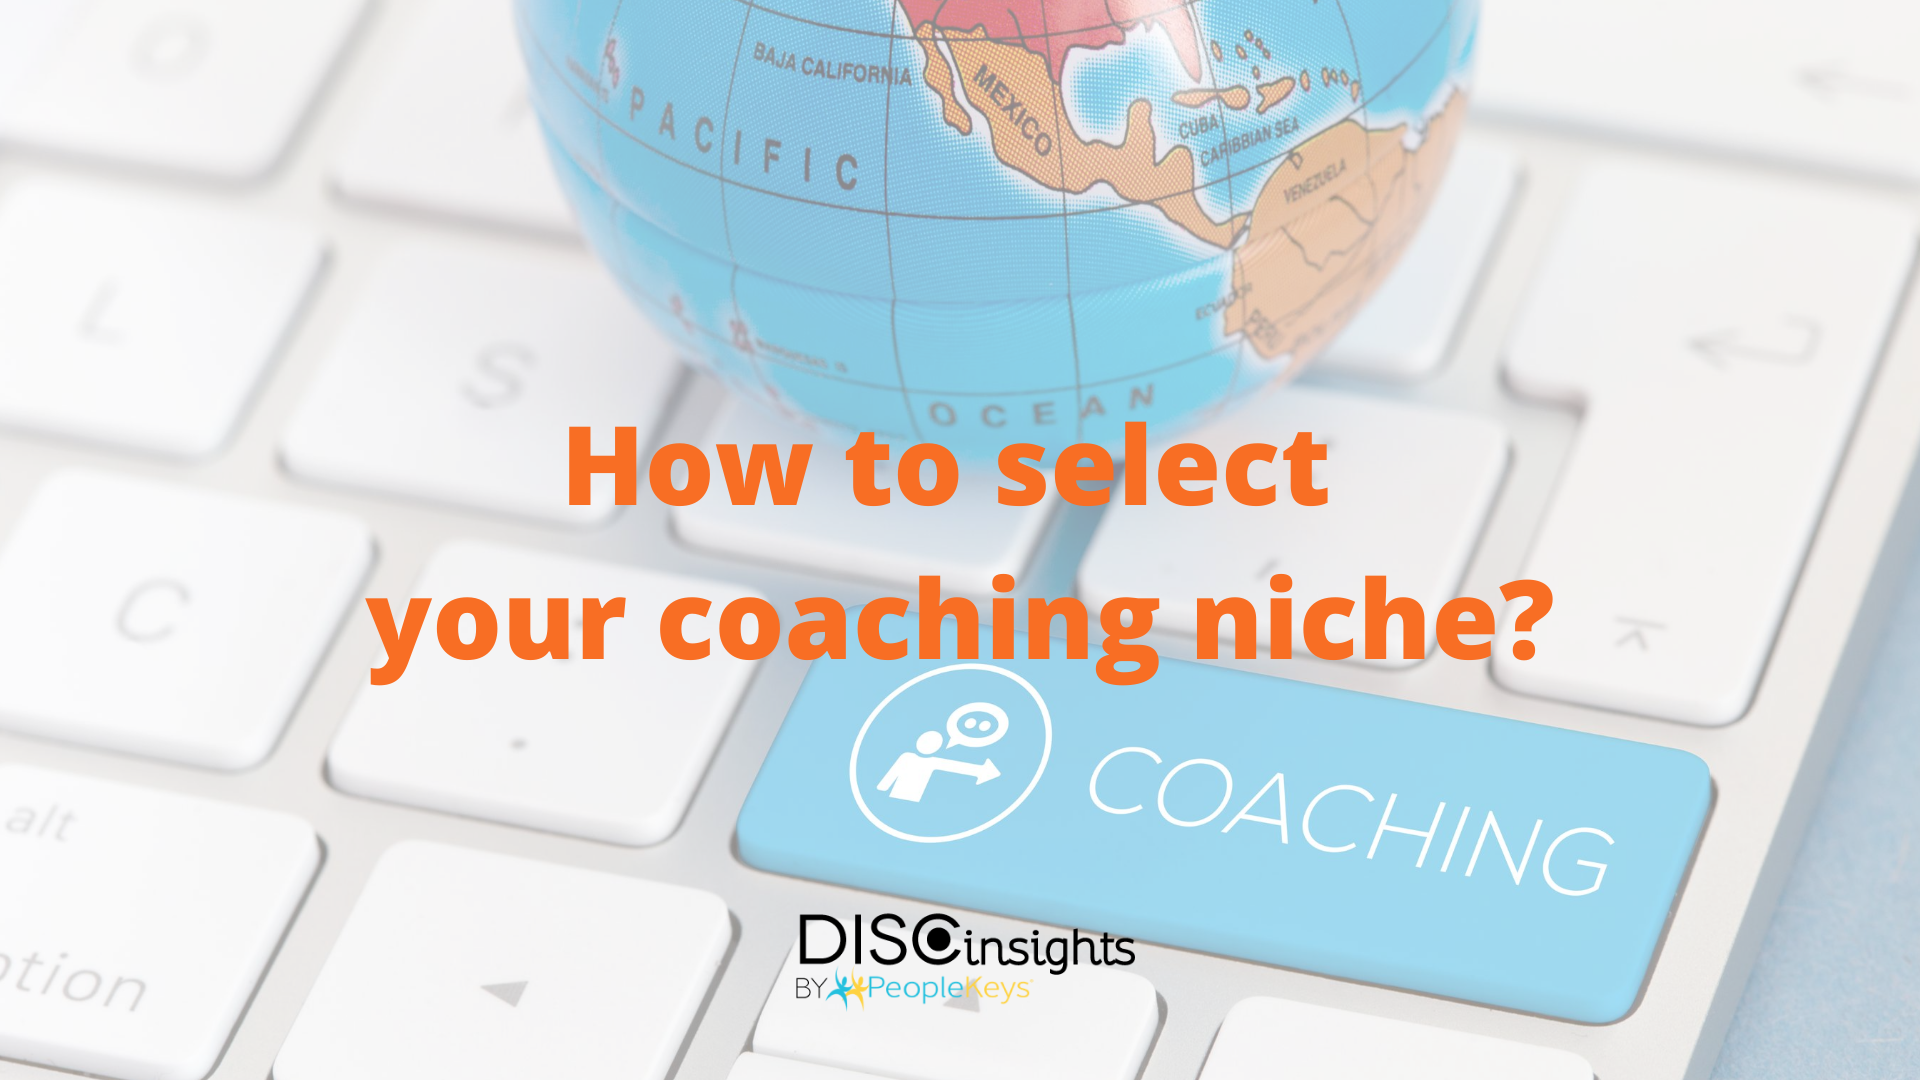 Selecting-Coaching-Niche